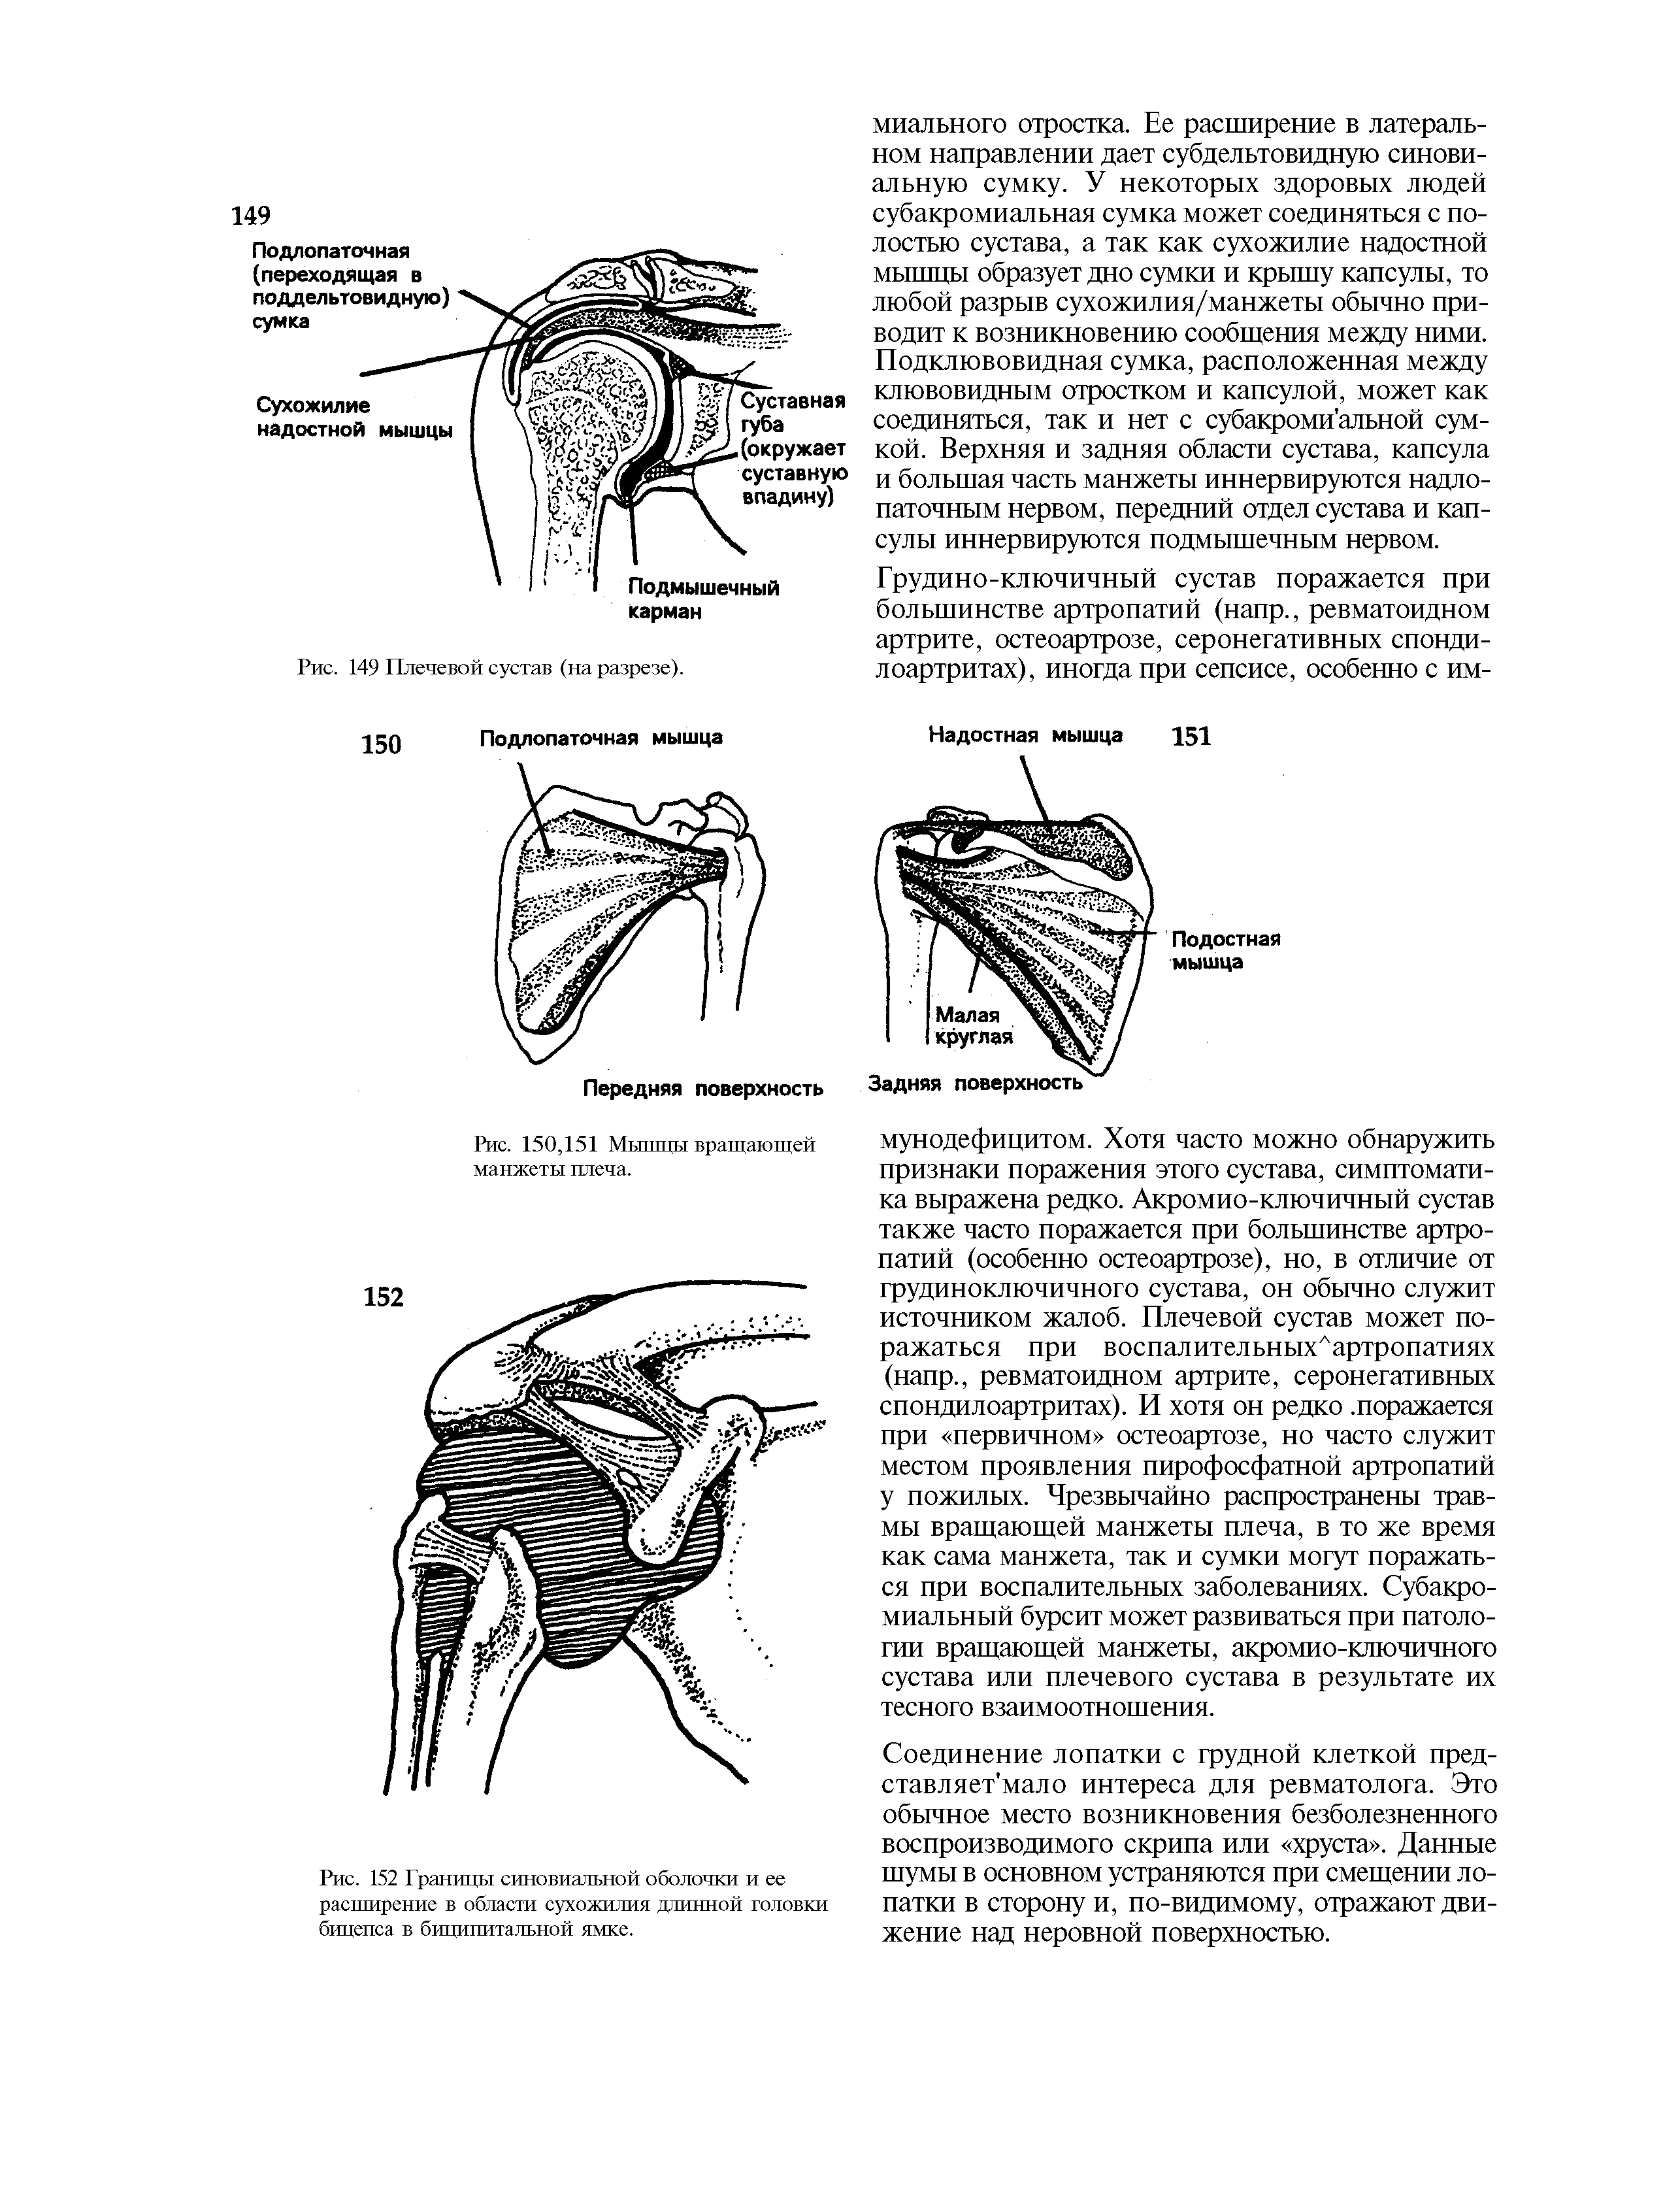 Рис. 152 Границы синовиальной оболочки и ее расширение в области сухожилия длинной головки бицепса в биципитальной ямке.